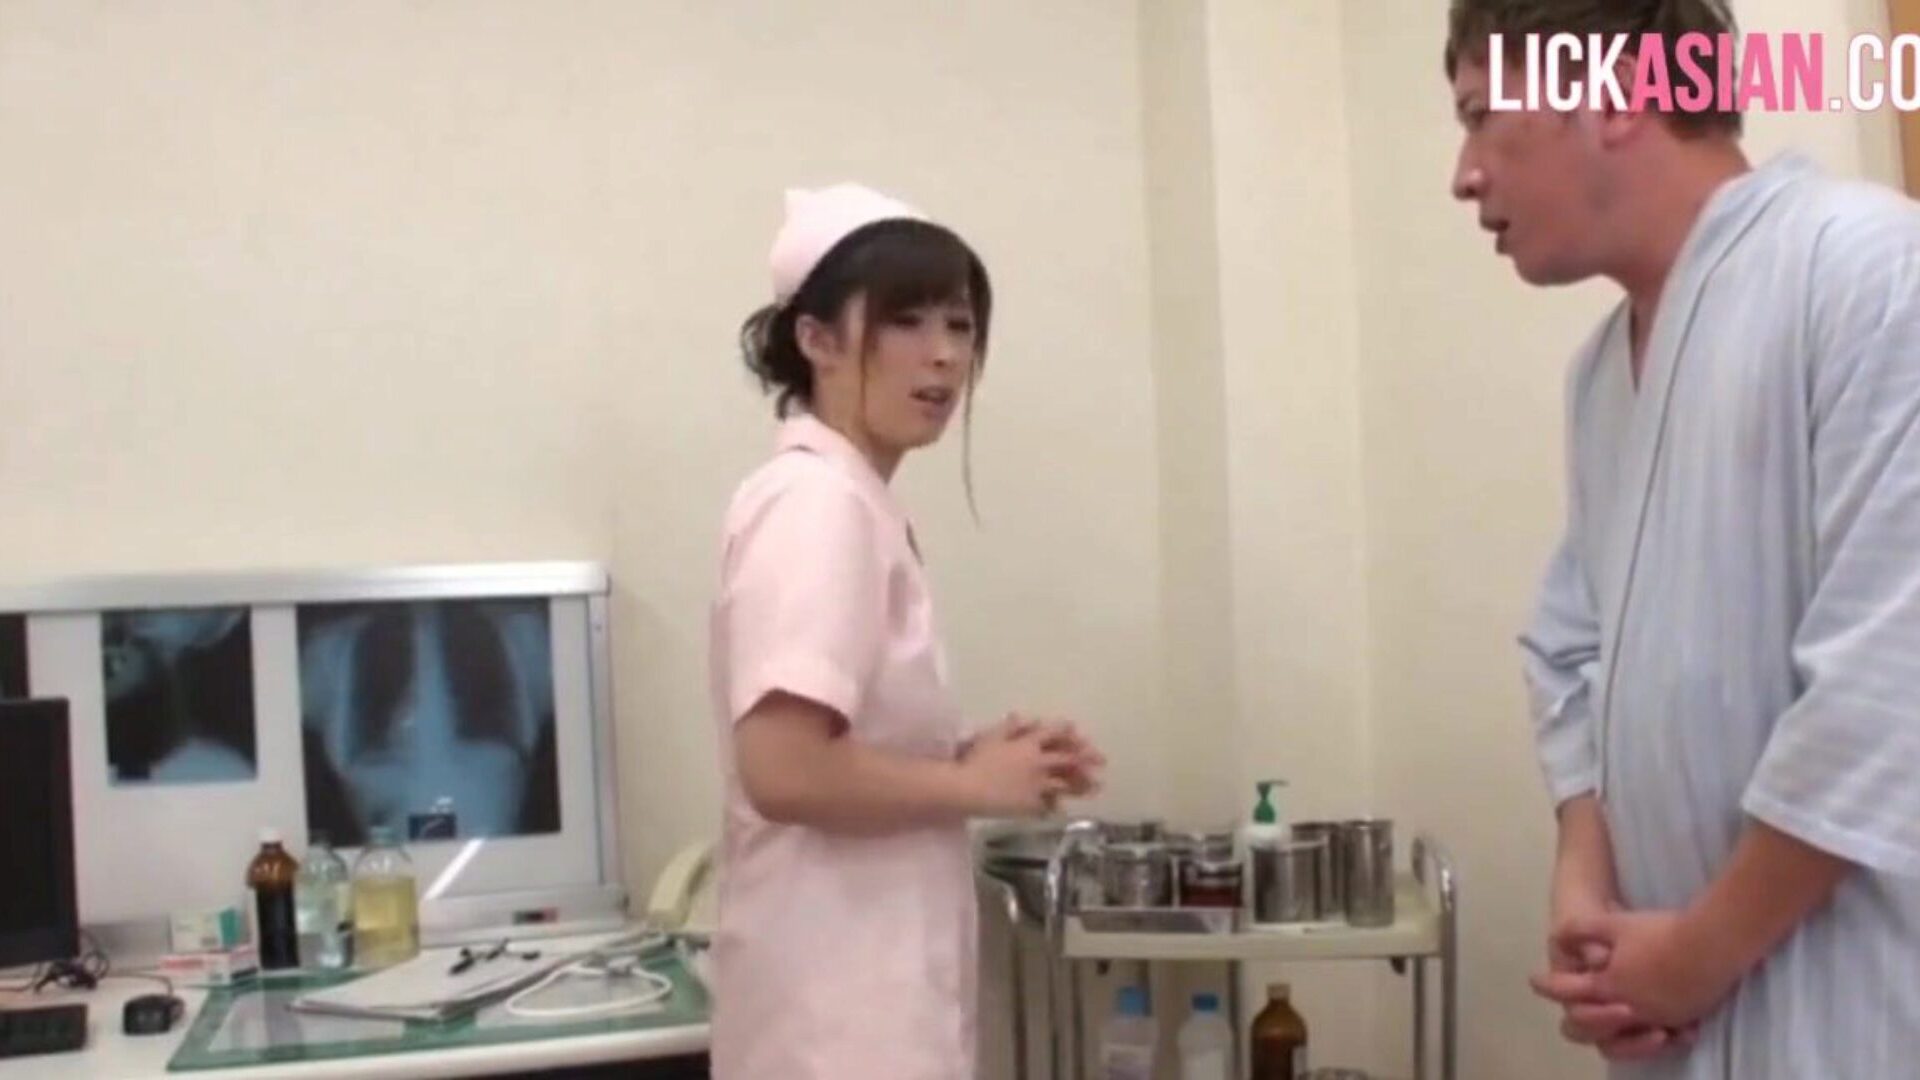 asijská sestra aplikuje na pacienta drsnou léčbu šokem